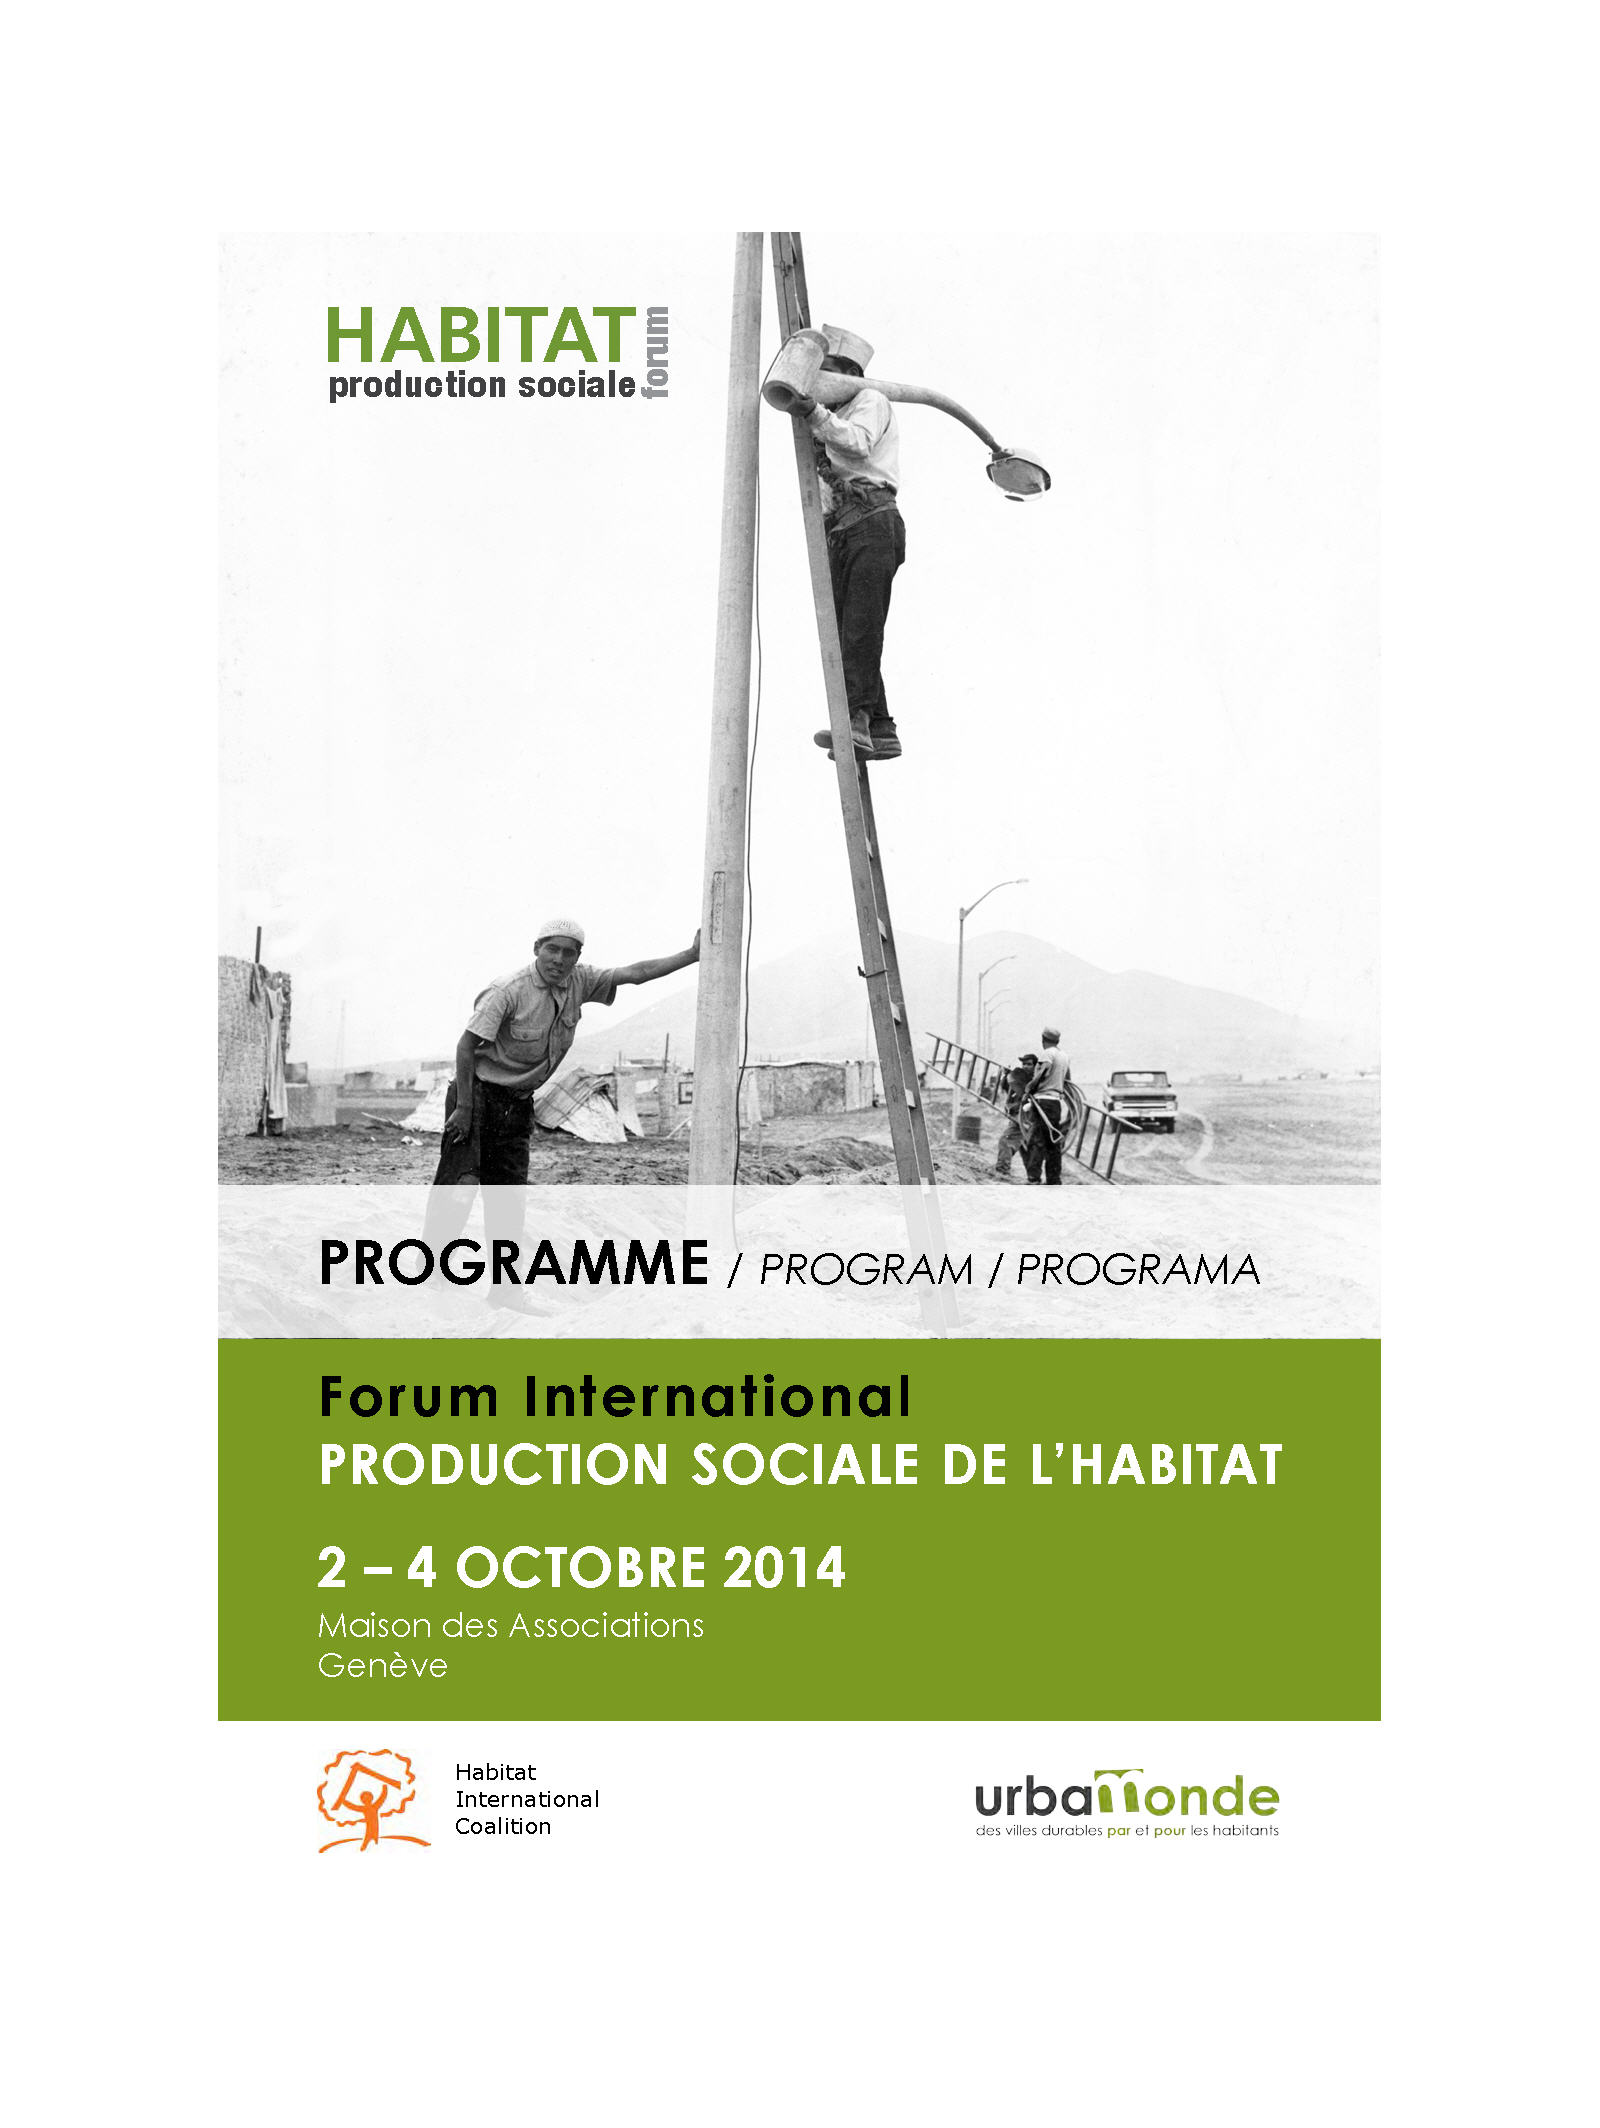 ¡El Forum International 2014 de Urbamonde sobre producción social del hábitat empieza mañana!